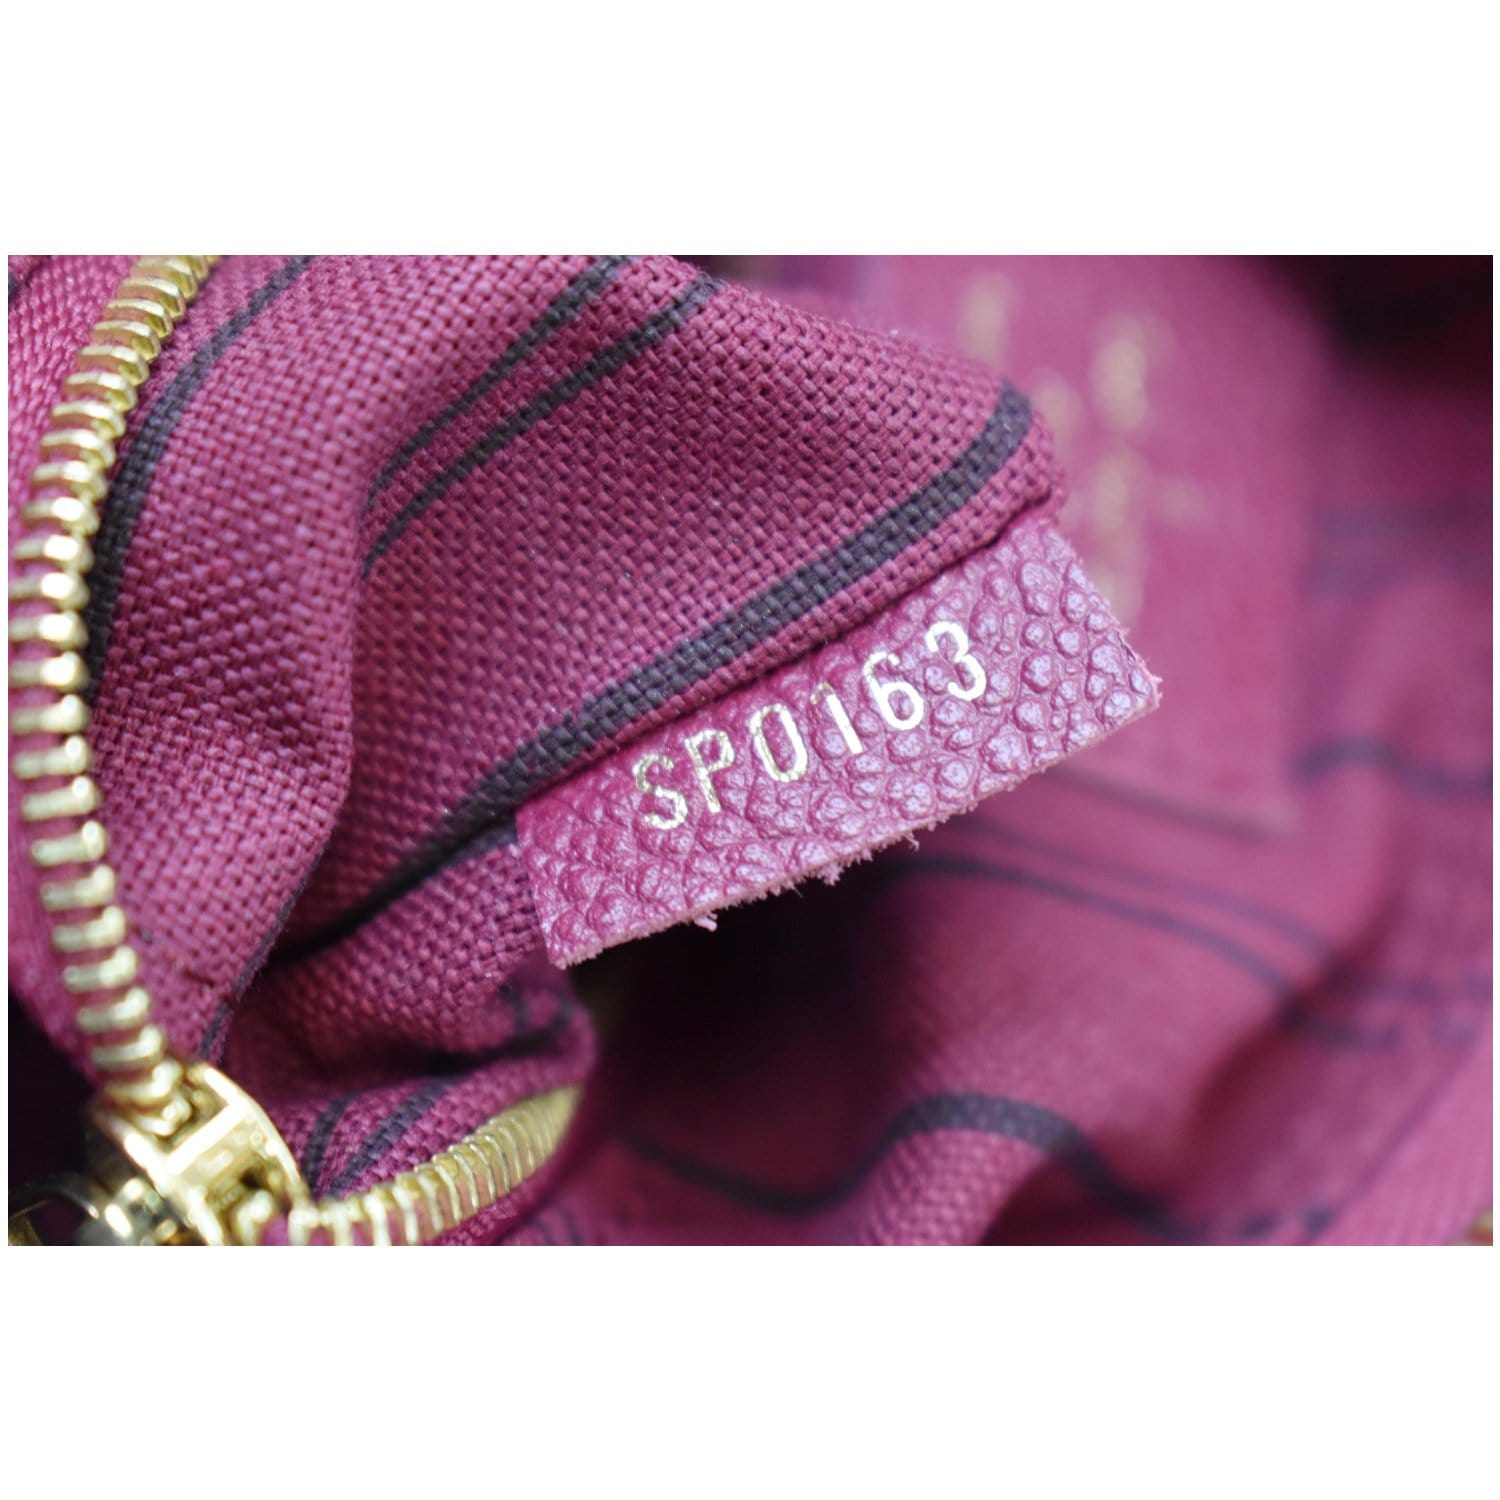 Louis Vuitton Purple Monogram Empreinte Leather Speedy Bandoulière 25 Shoulder Bag